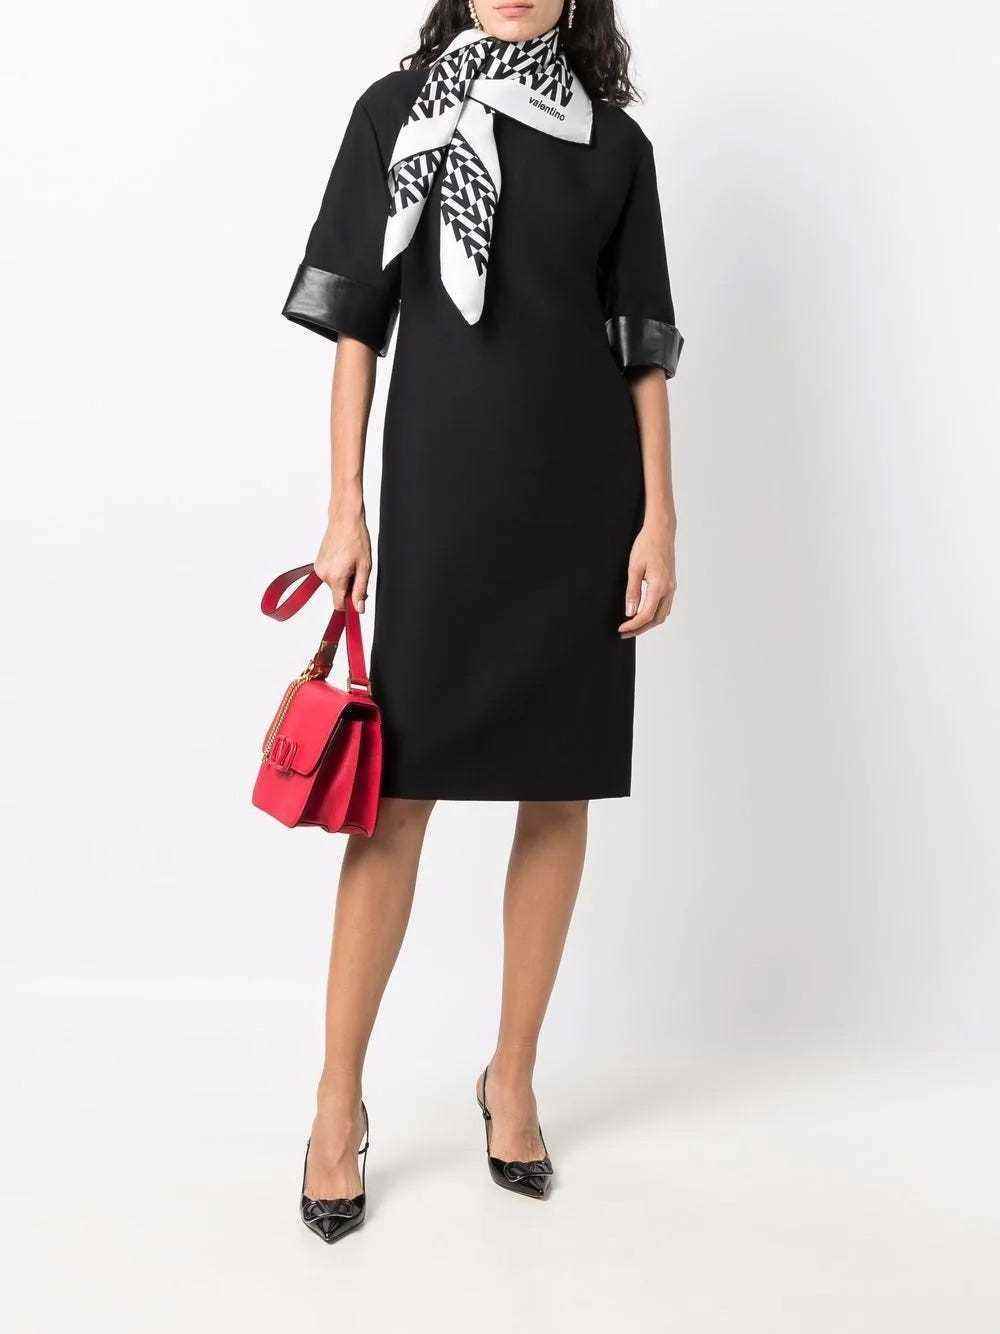 Schwarzes, knielanges Kleid von Valentino, getragen vom Model.